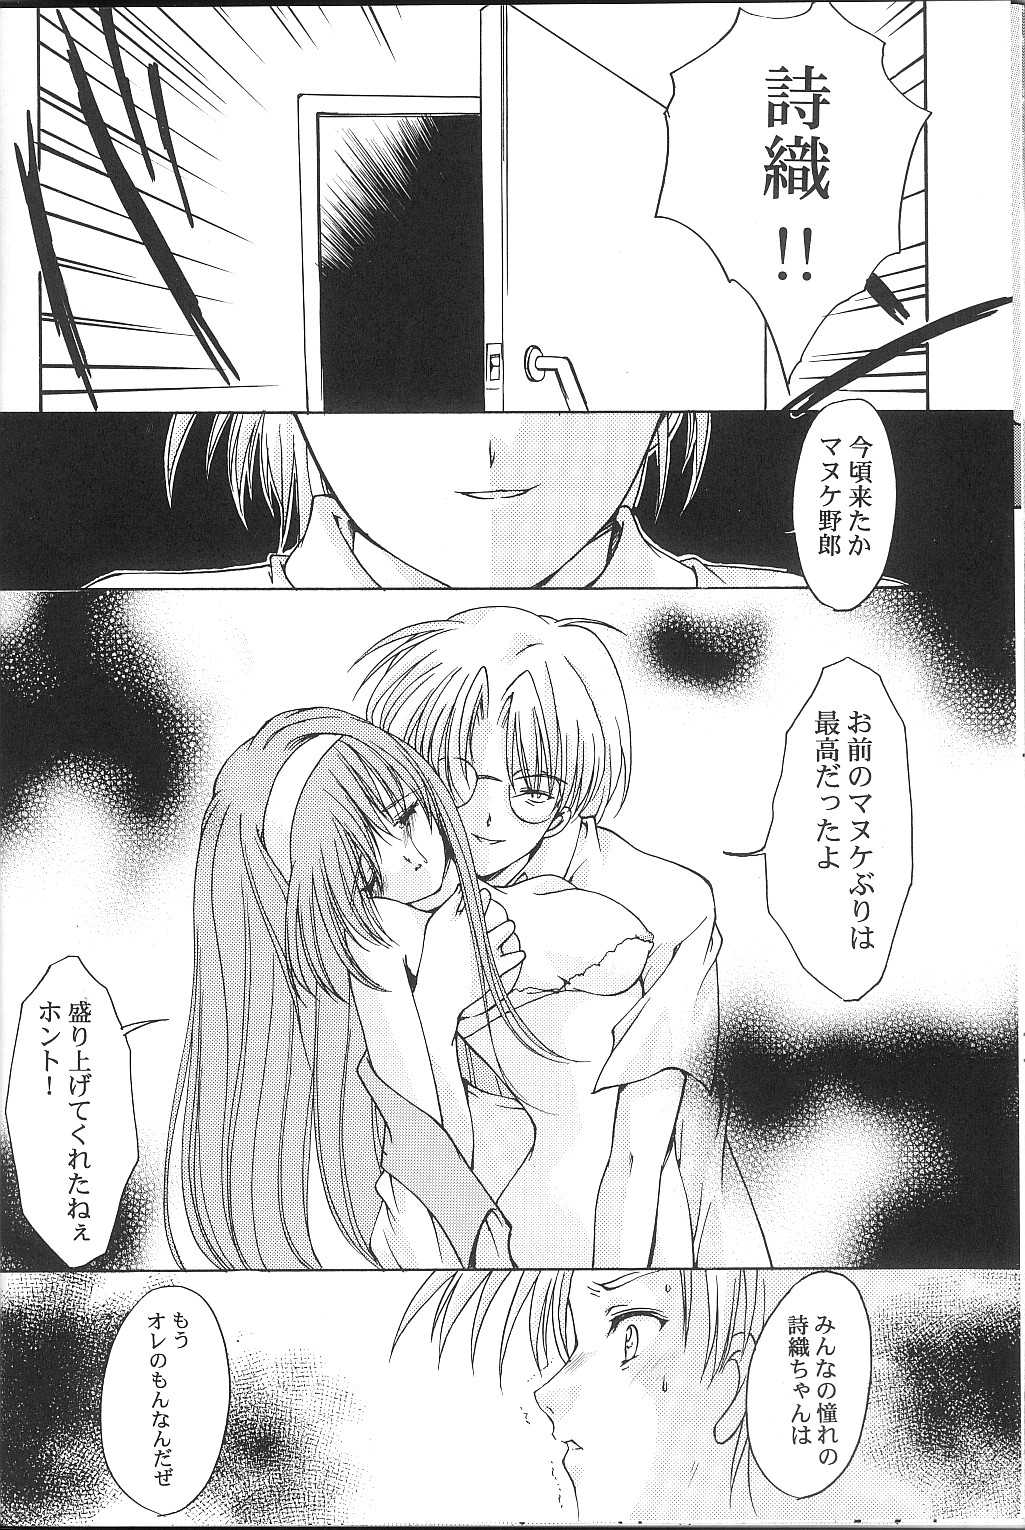 [HIGH RISK REVOLUTION] Shiori Vol.9 Garasugoshi no Real (Tokimeki Memorial) [HIGH RISK REVOLUTION] 詩織 第九章 硝子越しのリアル (ときめきメモリアル)